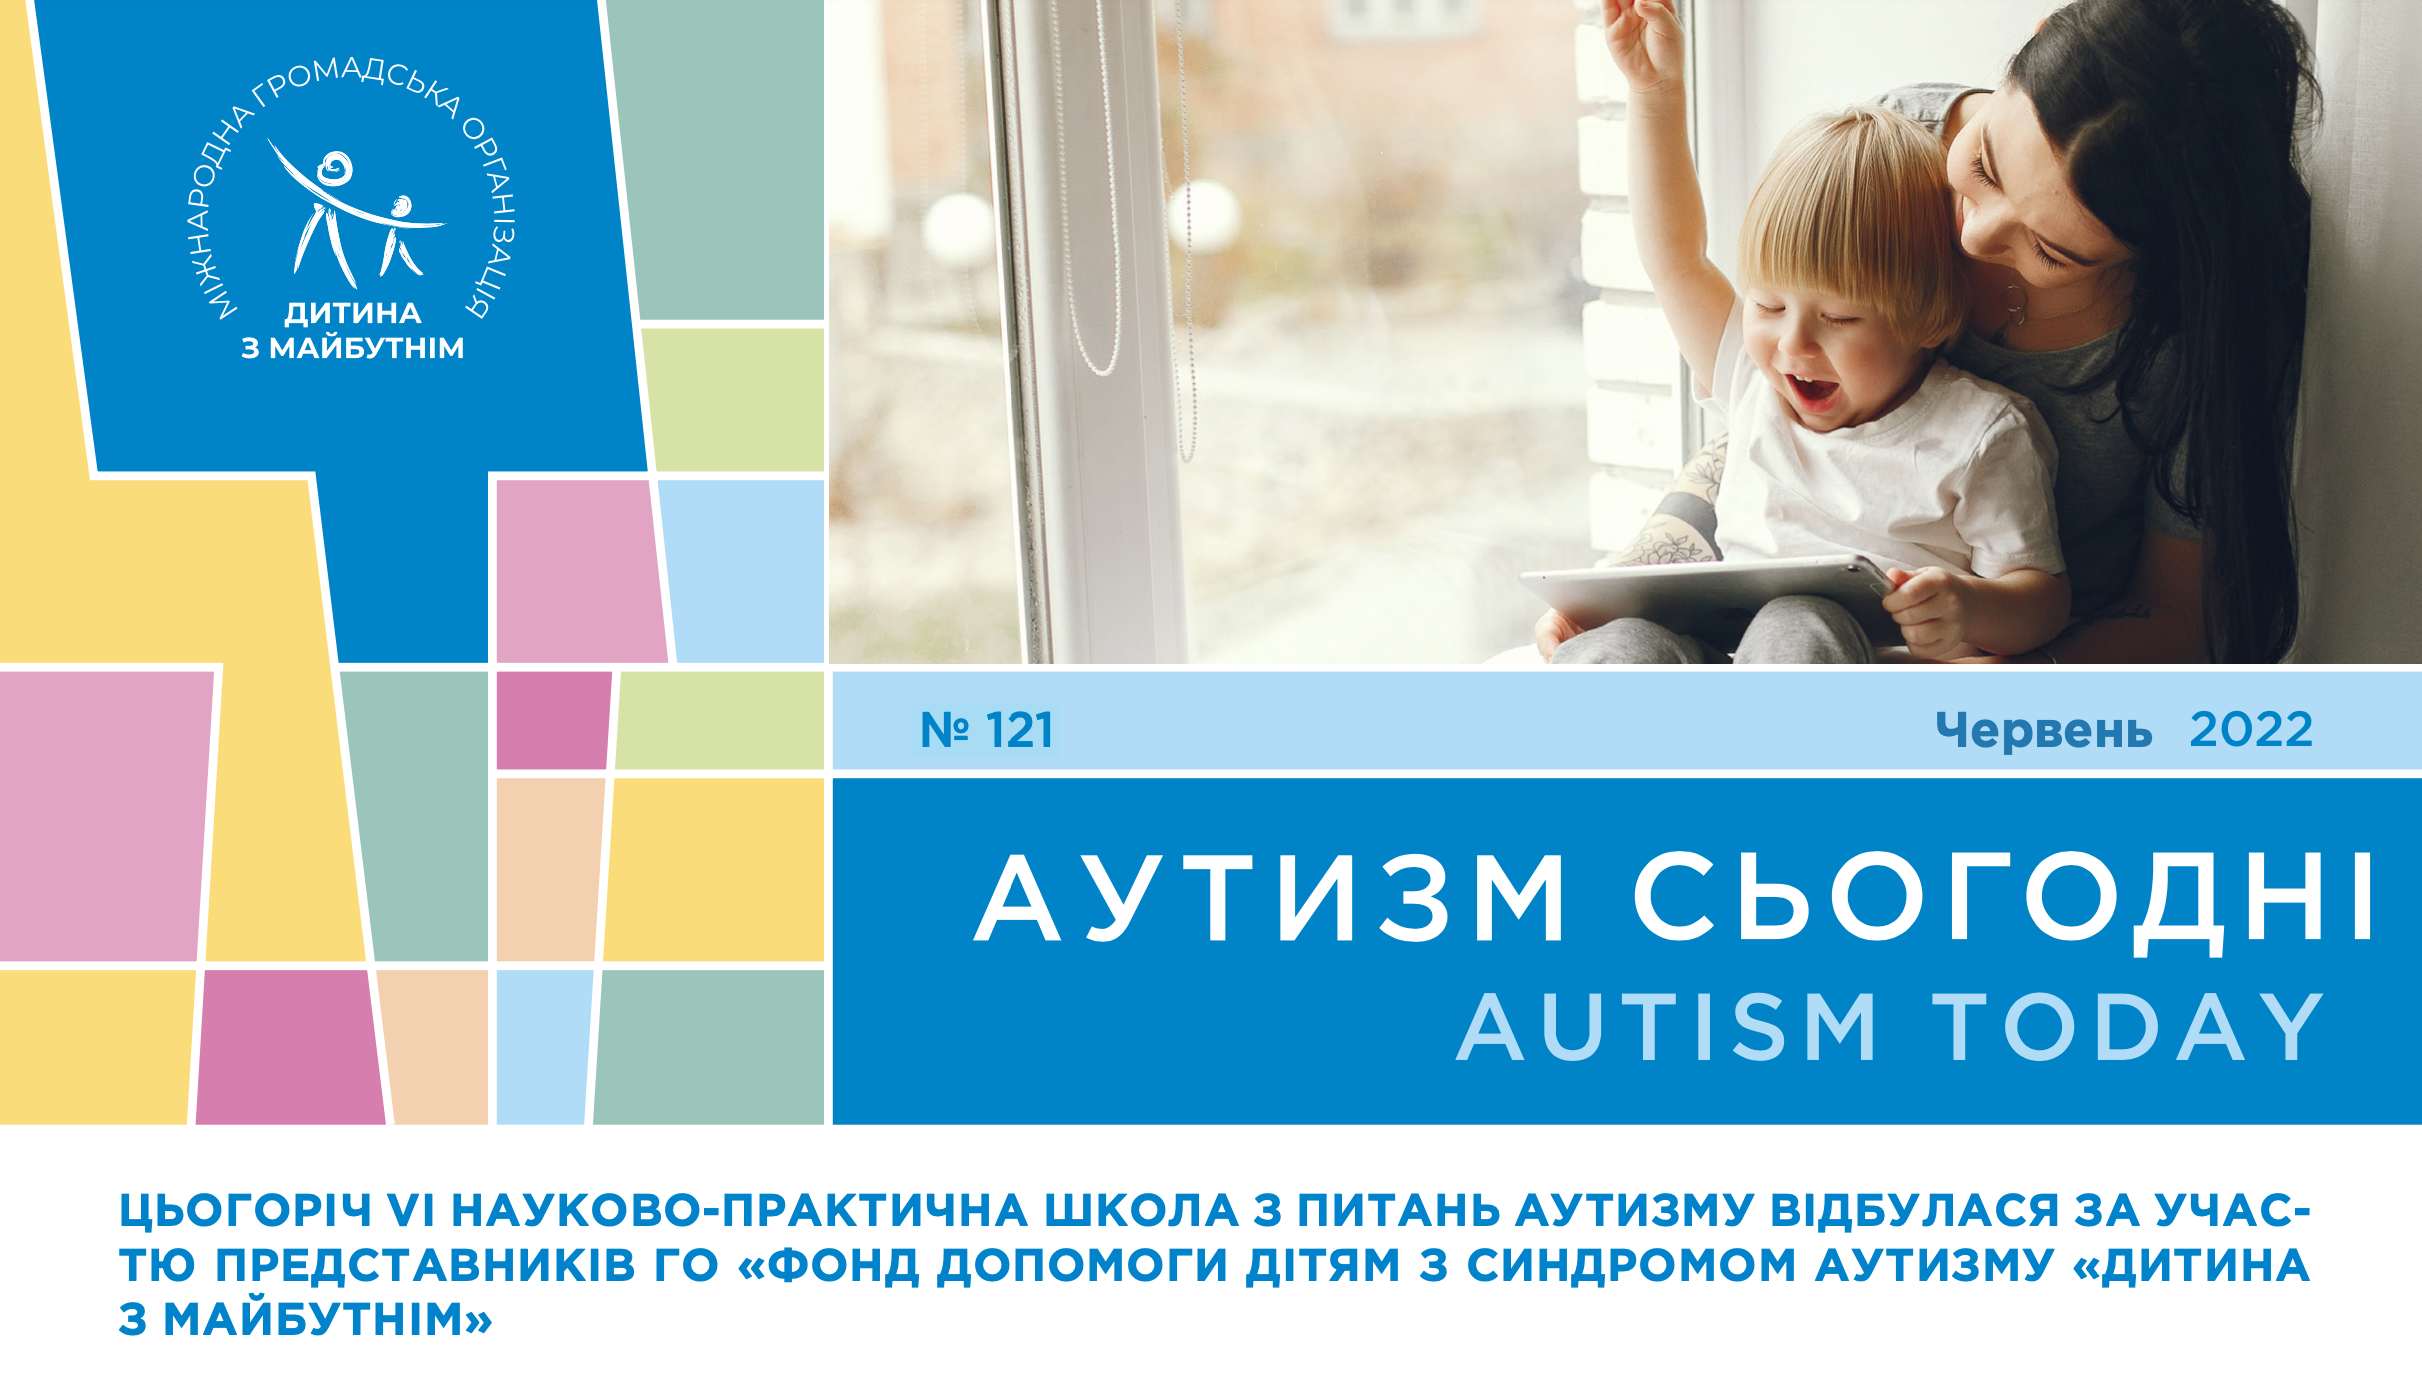 VI научно-практическая школа по аутизму, десять шагов к построению независимости ребенка с РАС и история аутиста с идеальным слухом — на страницах «Аутизм сегодня» за июнь 2022 года